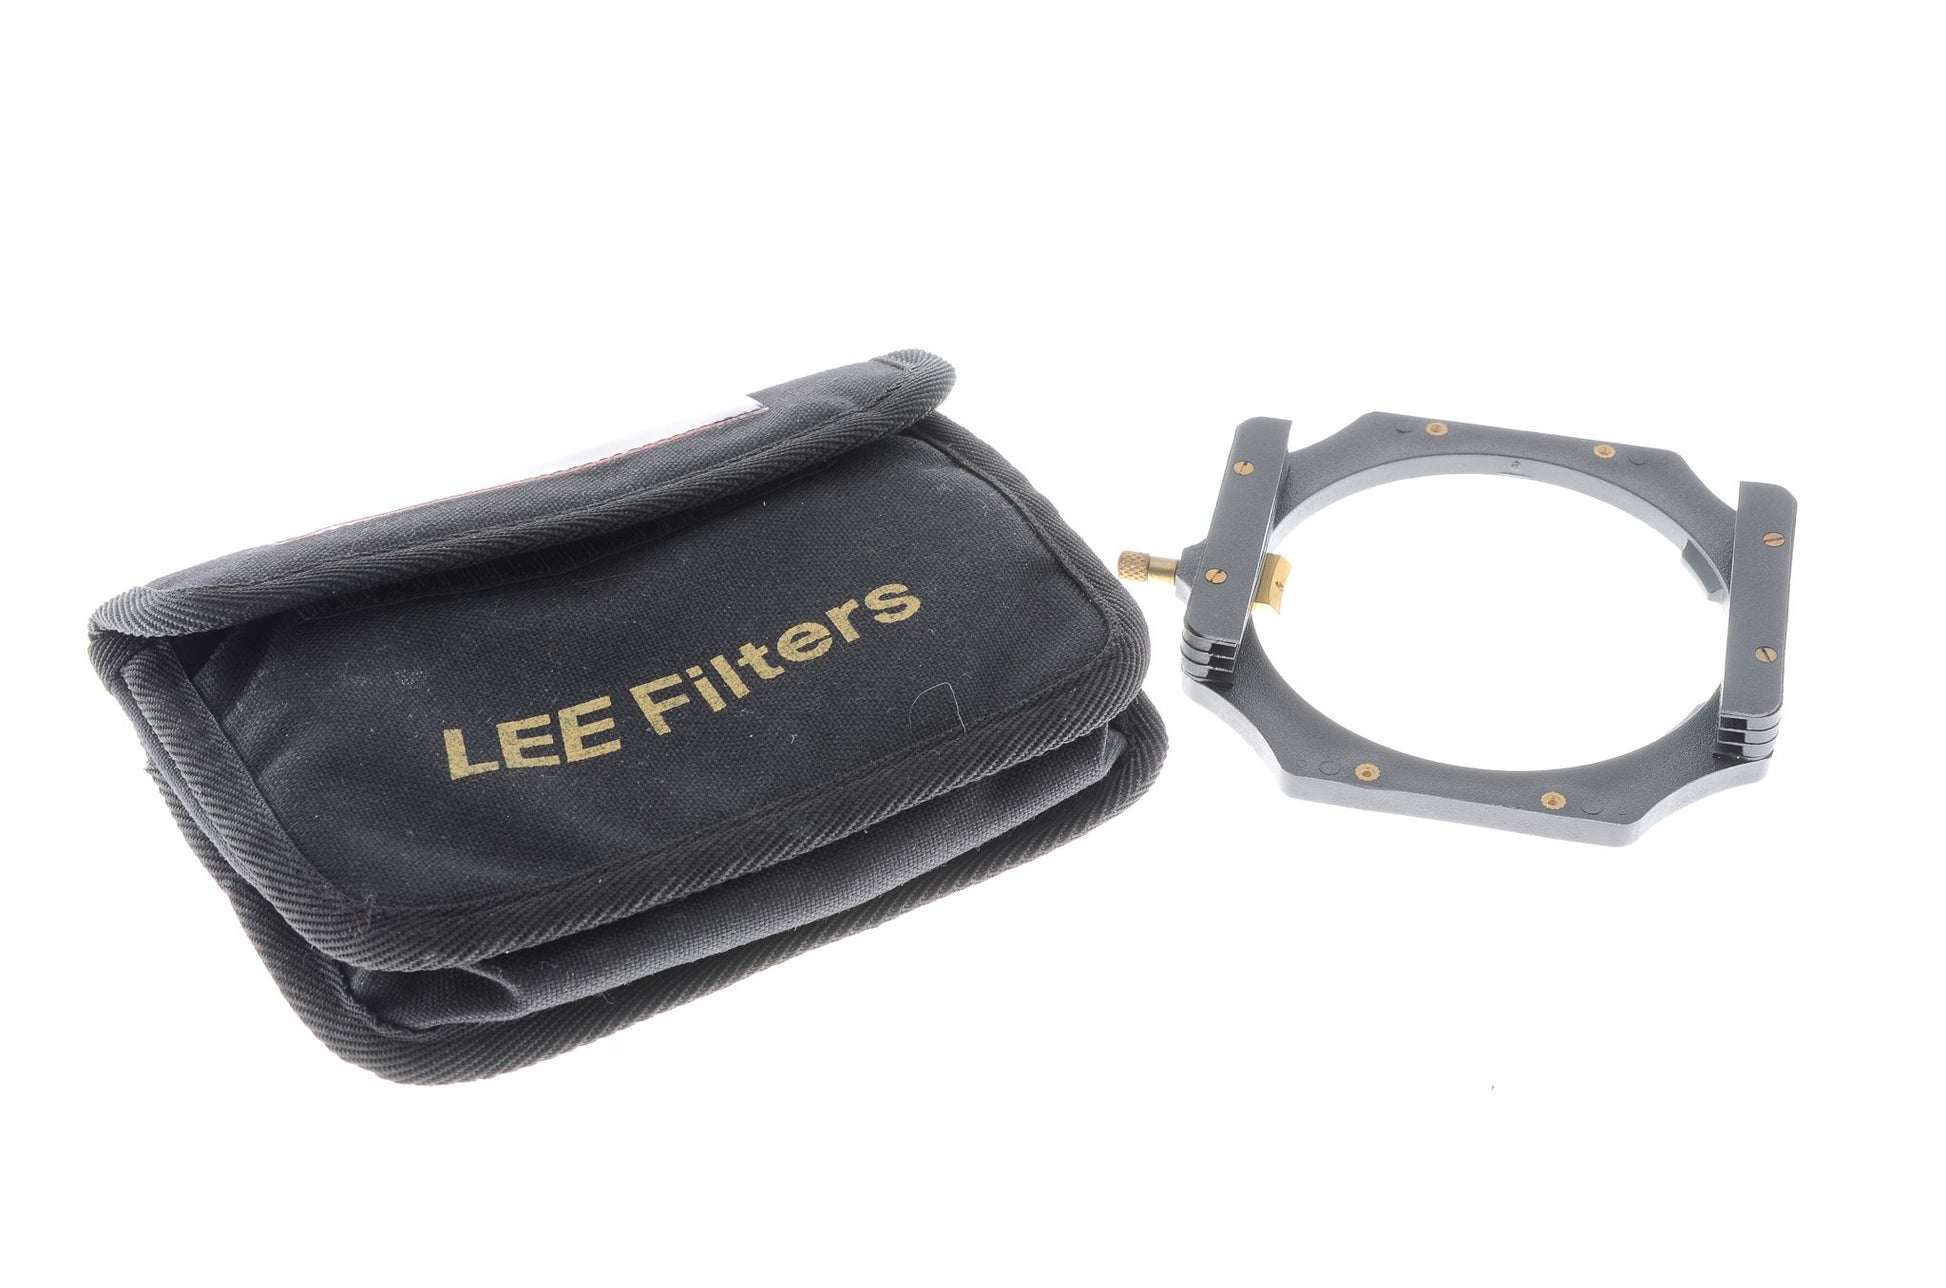 LEE Filters LEE100 Filter Holder (Old Model) - Accessory